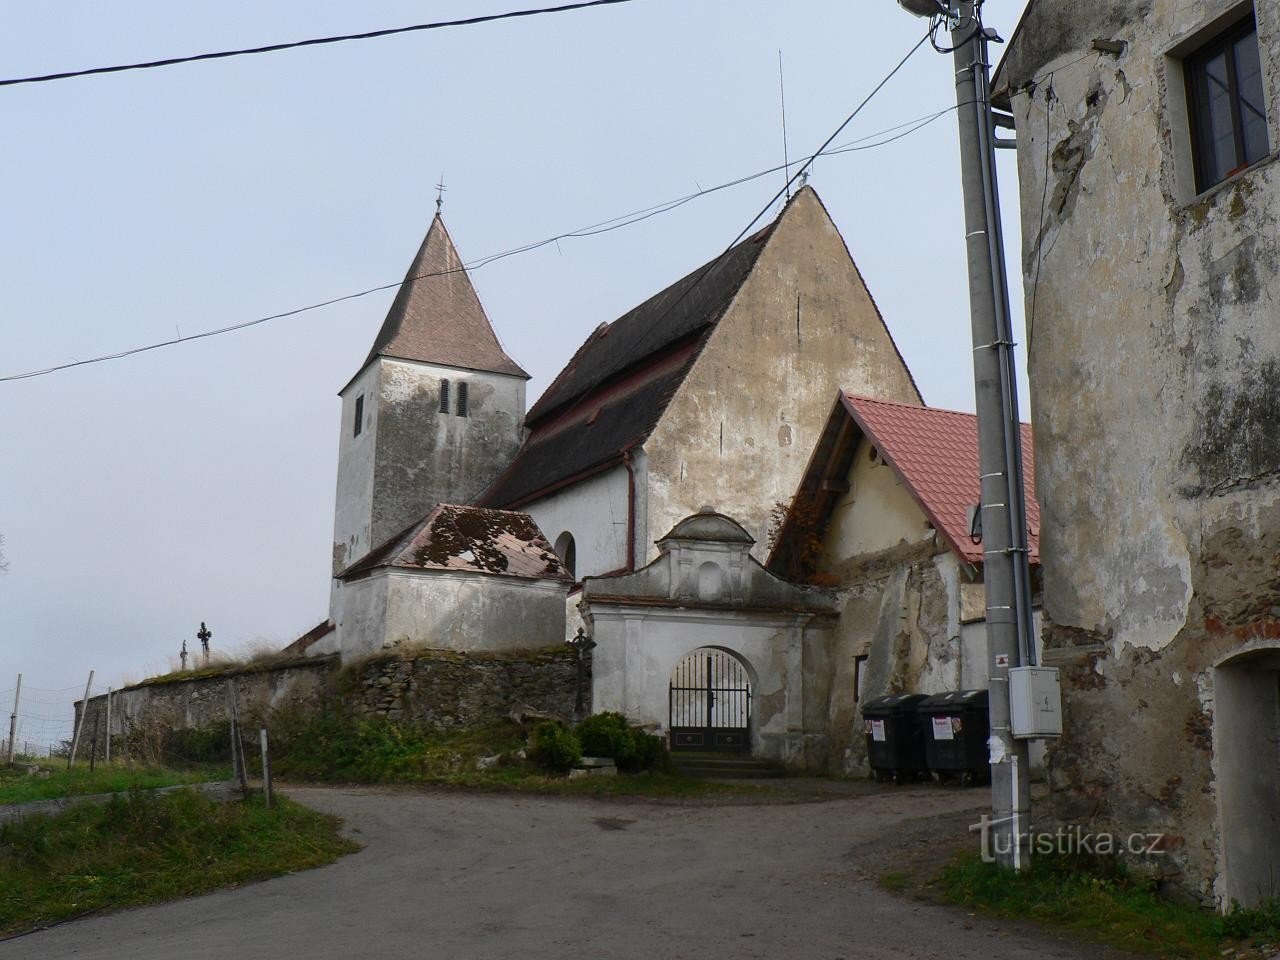 Albrechtice, l'église de la Vierge Marie vue de l'ouest